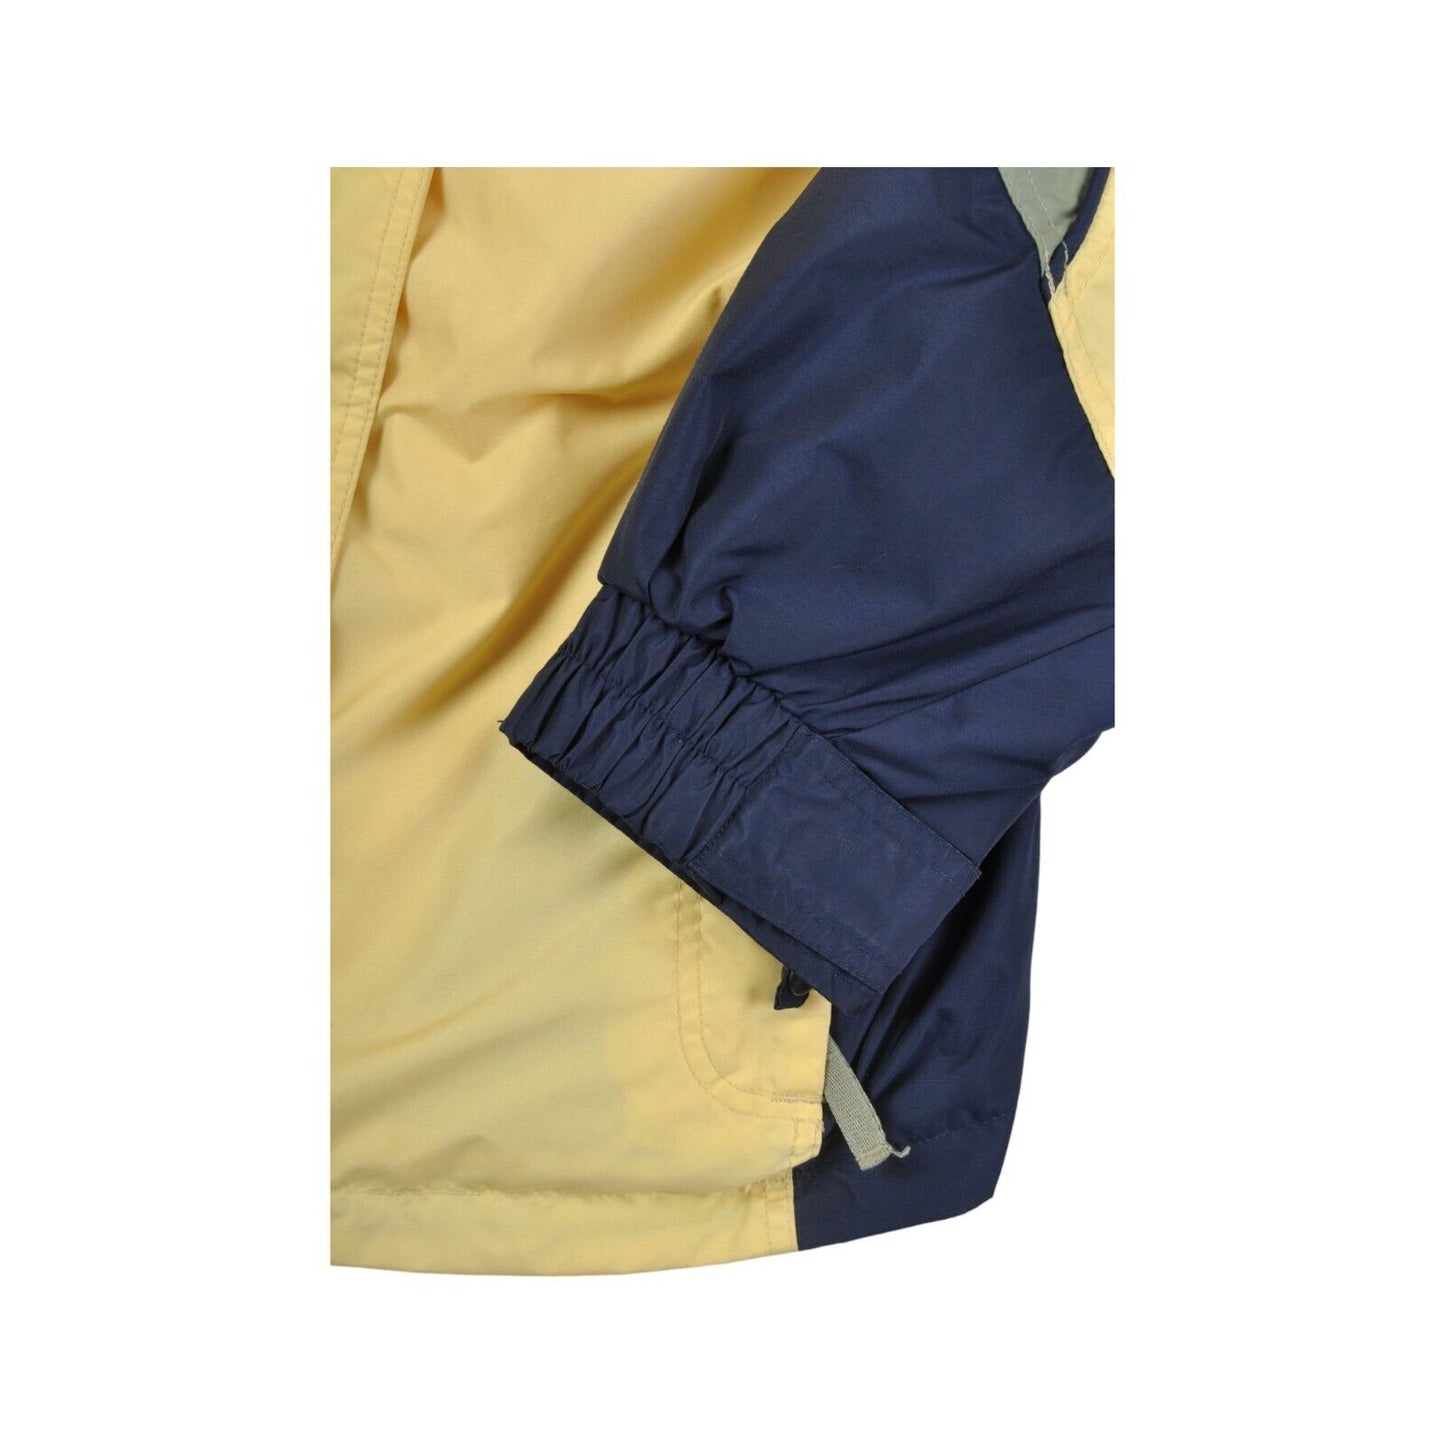 Vintage Columbia Jacket Waterproof Yellow/Navy Ladies XL